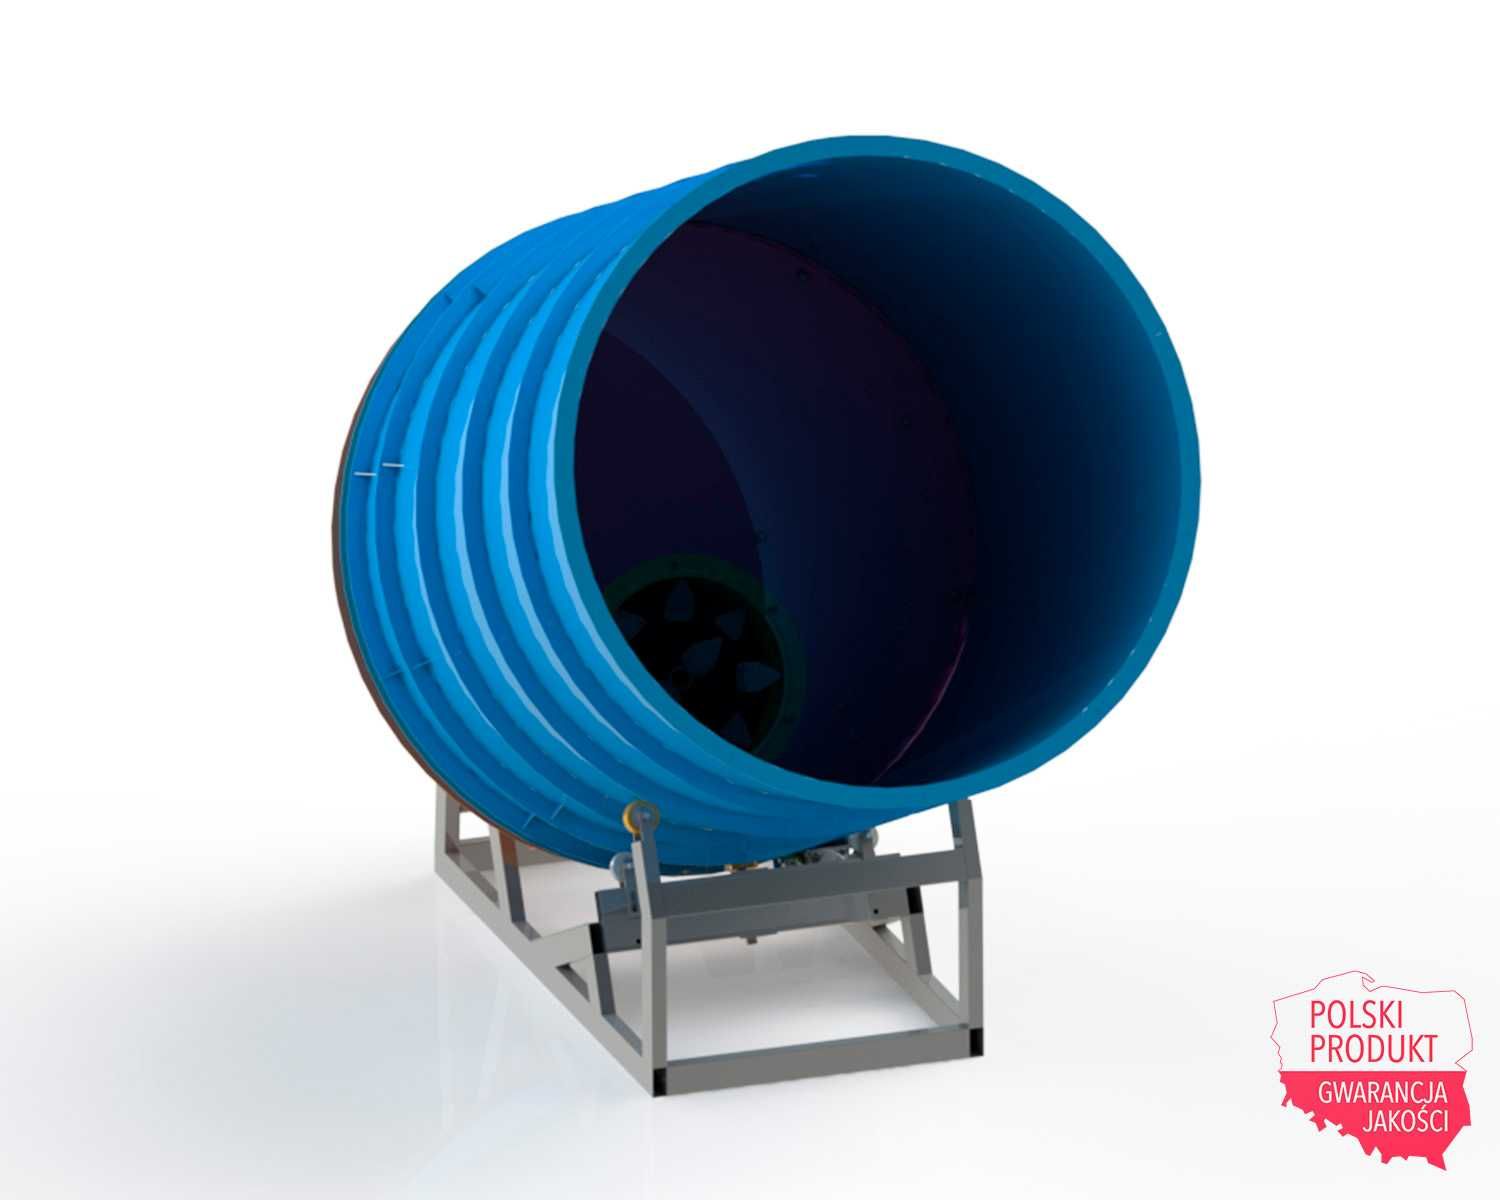 Rozdrabniacz balotów słomy NIEDŻWIEDŻ-1000, 37 kW, do 1000 kg/h